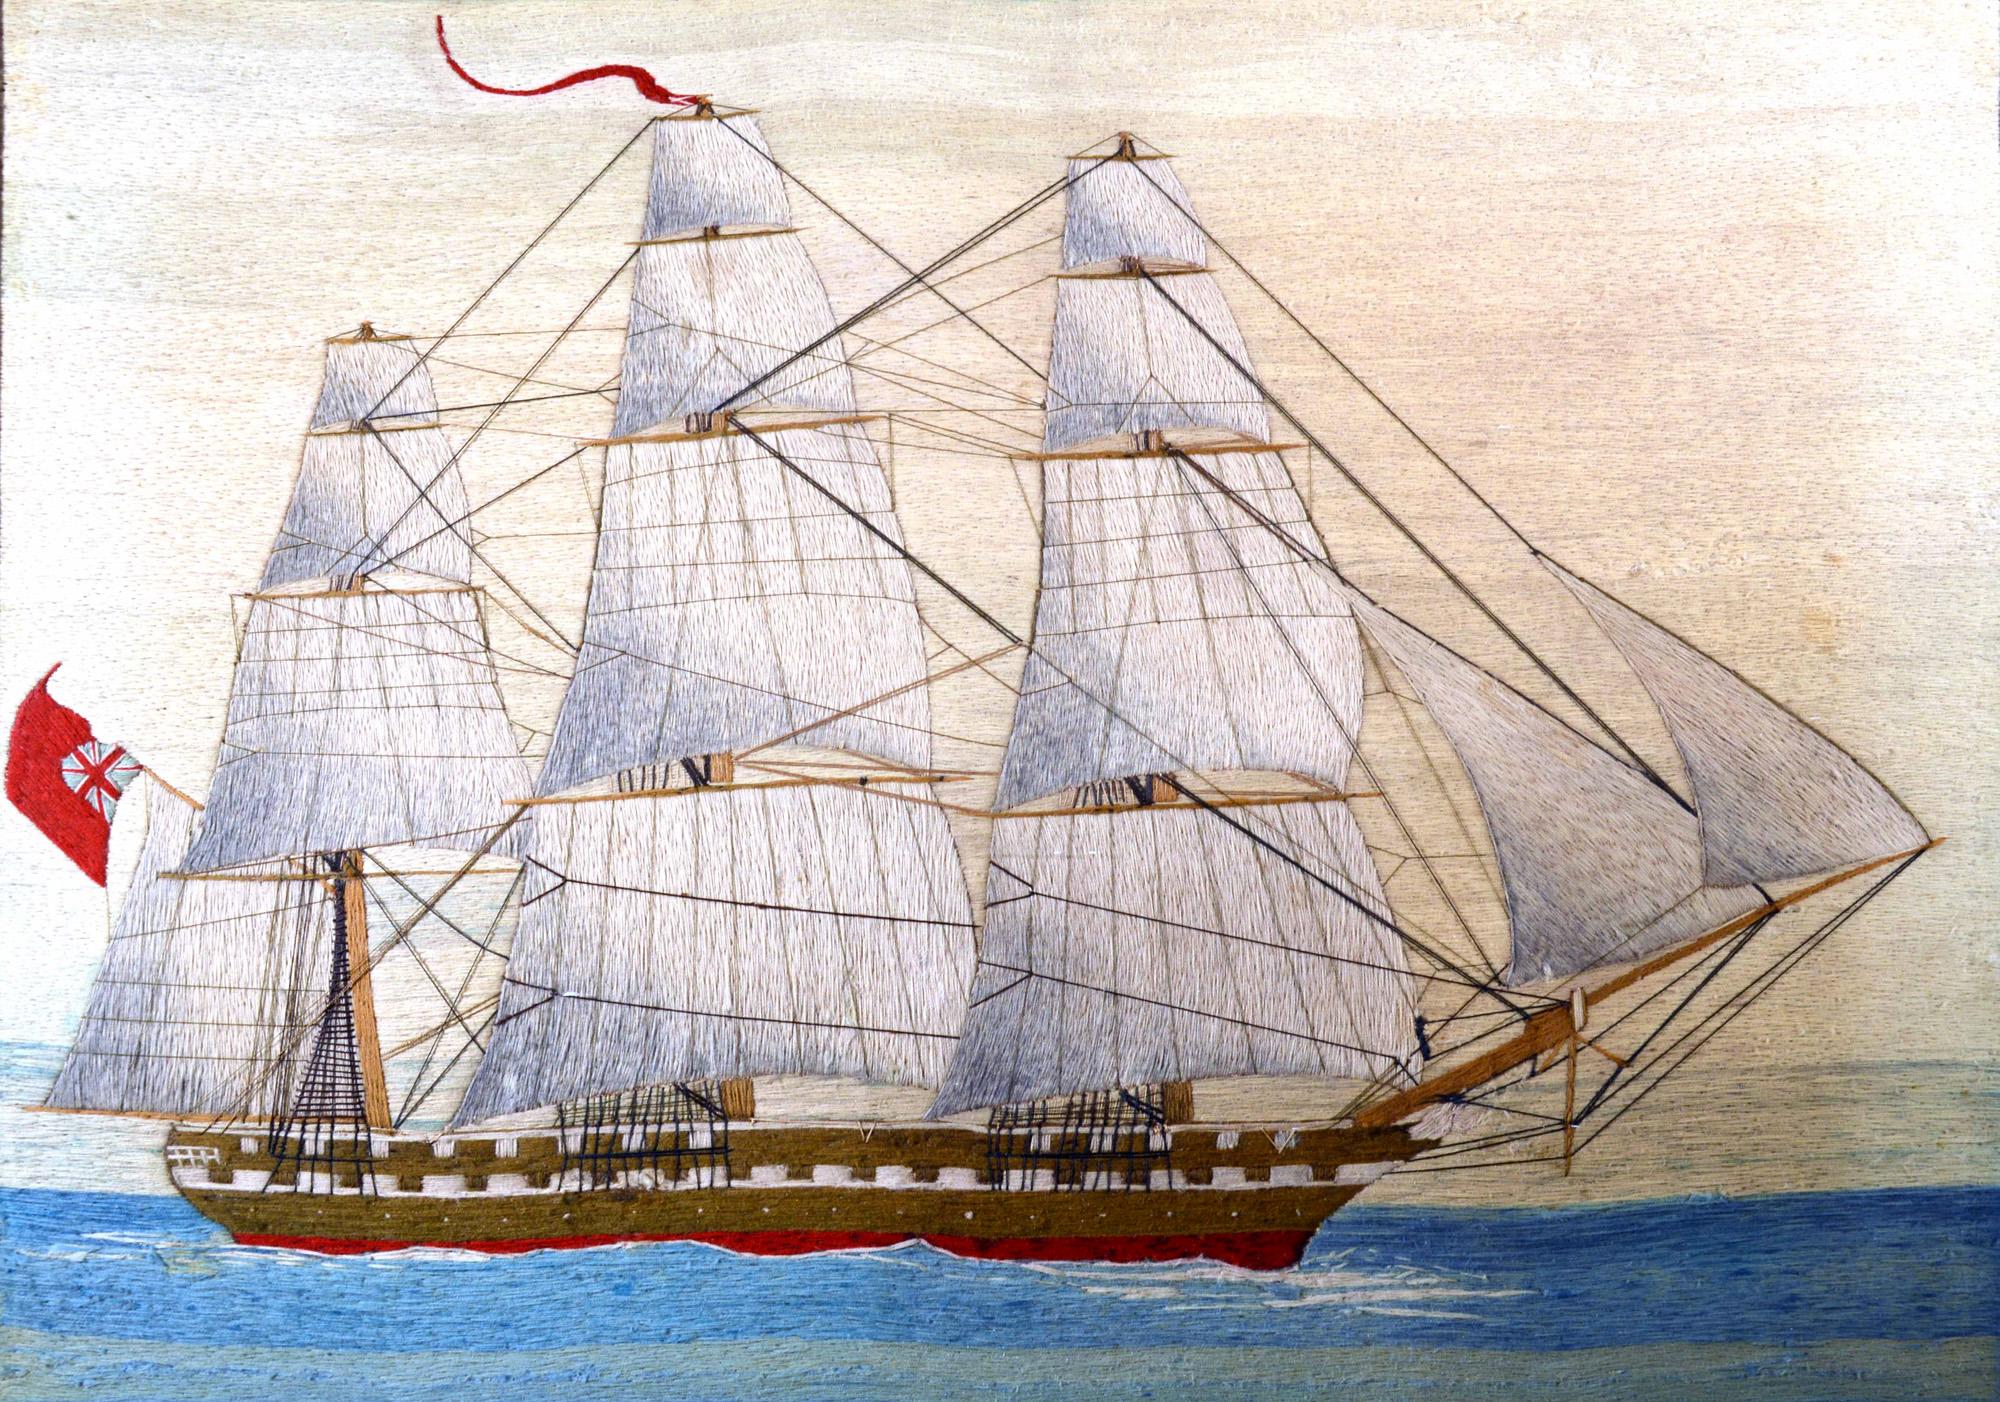 Grand ouvrage en laine d'un marin britannique représentant un navire de la marine royale à pleine voile,
vers 1875
(Ref : 9503-irim)

Le lainage de marin représente une vue à tribord d'un trois-mâts à gréement carré de la Royal Navy, toutes